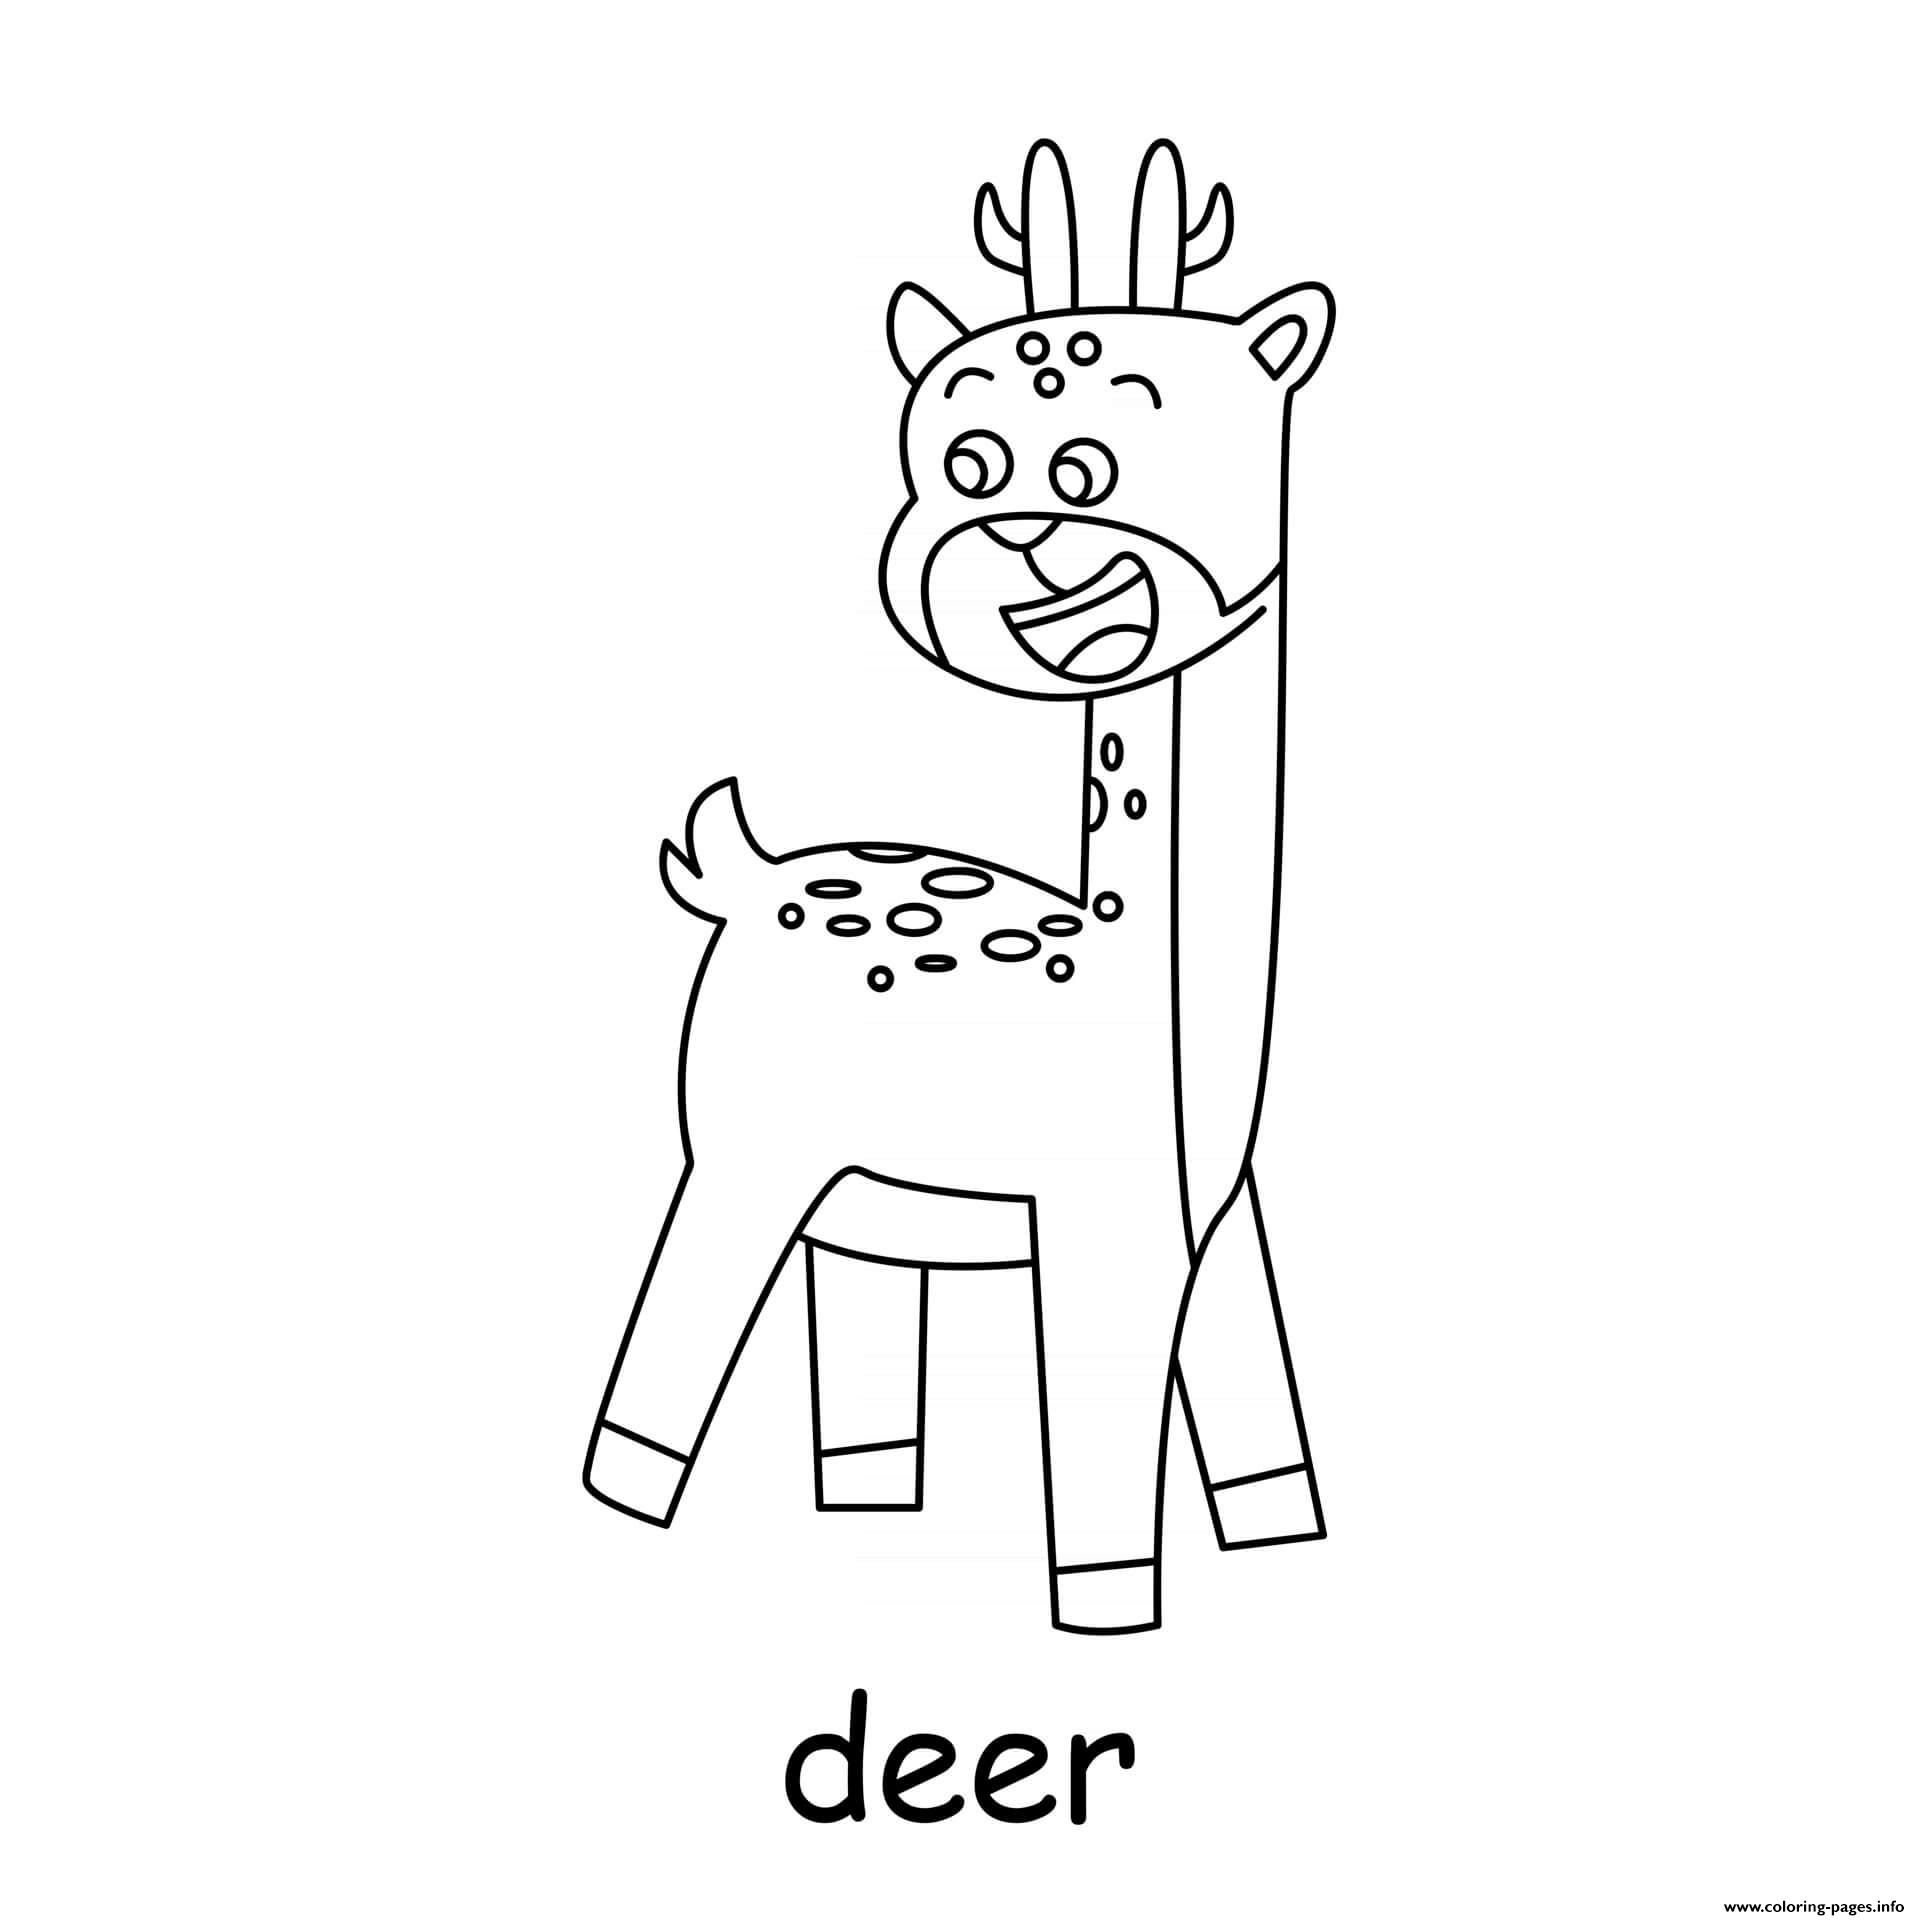 Deer coloring